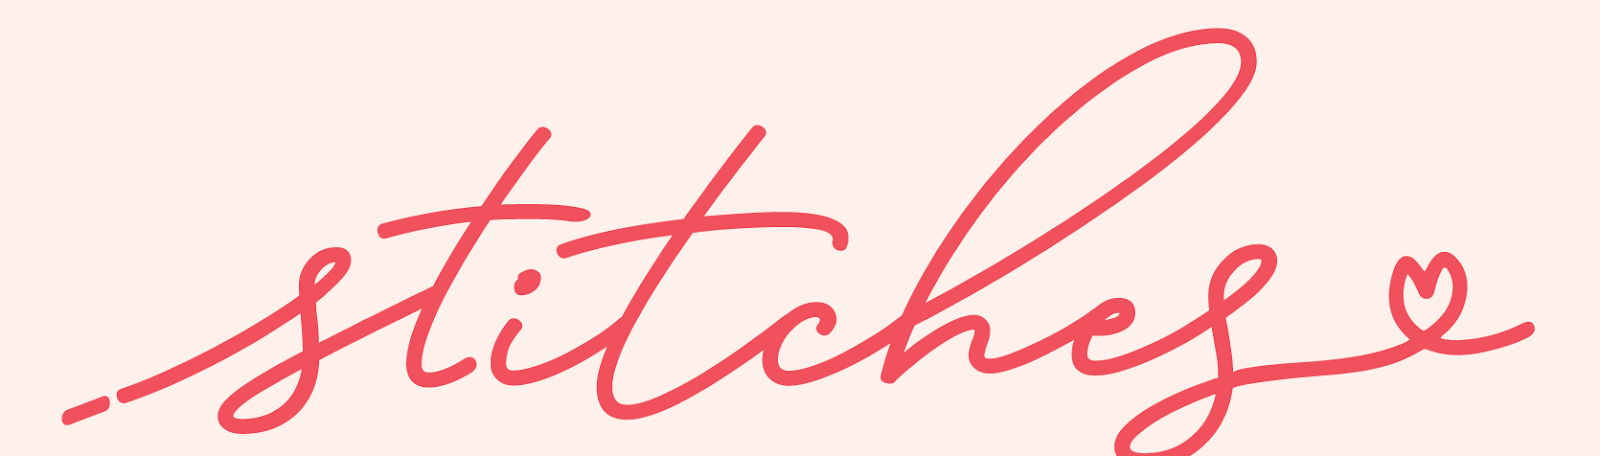 stitches logo